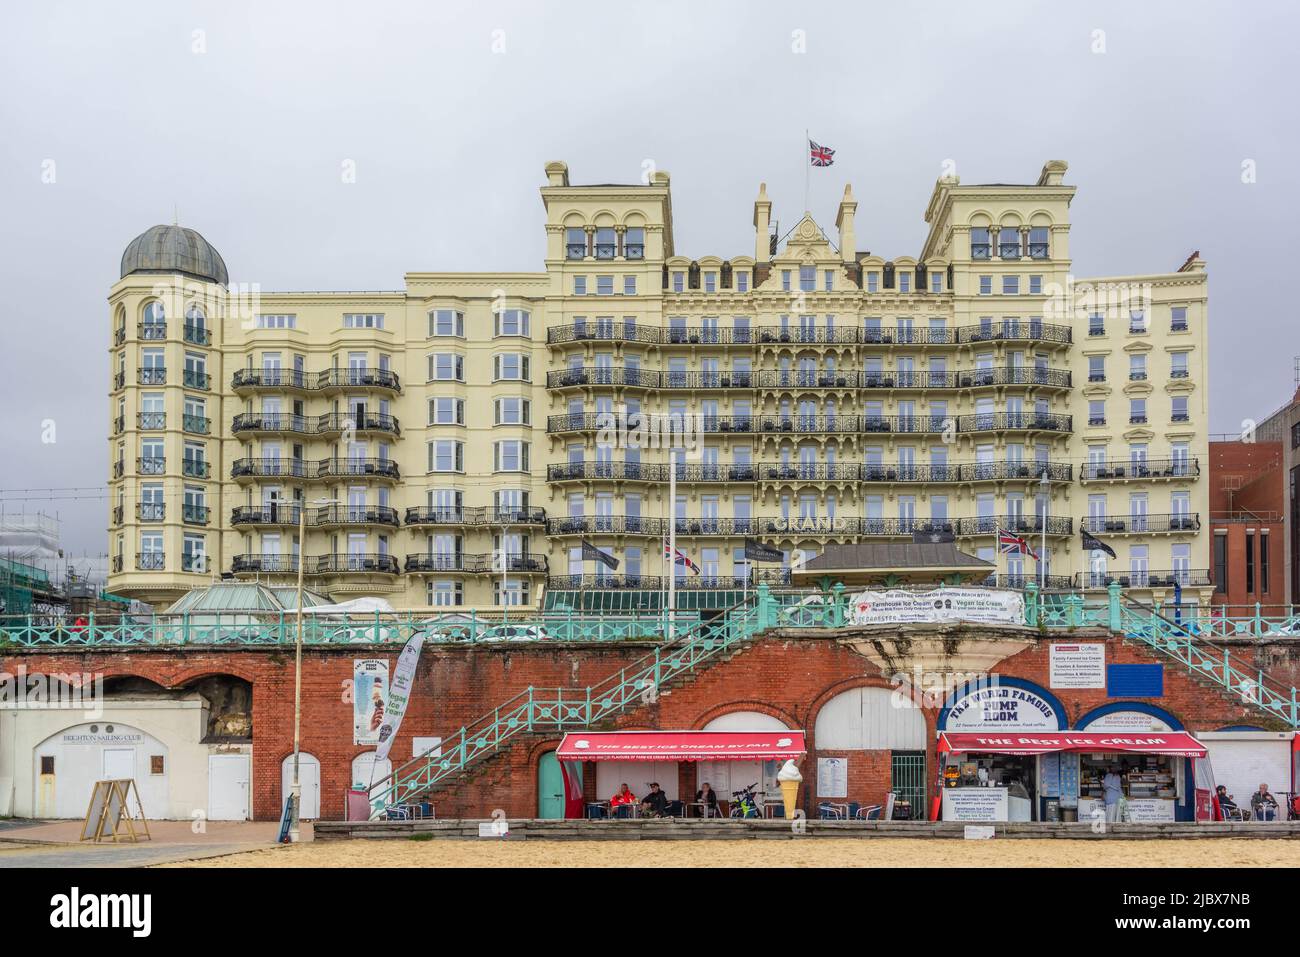 Le Grand Hotel, architecture victorienne historique le long du front de mer à Brighton, East Sussex, Angleterre, Royaume-Uni Banque D'Images